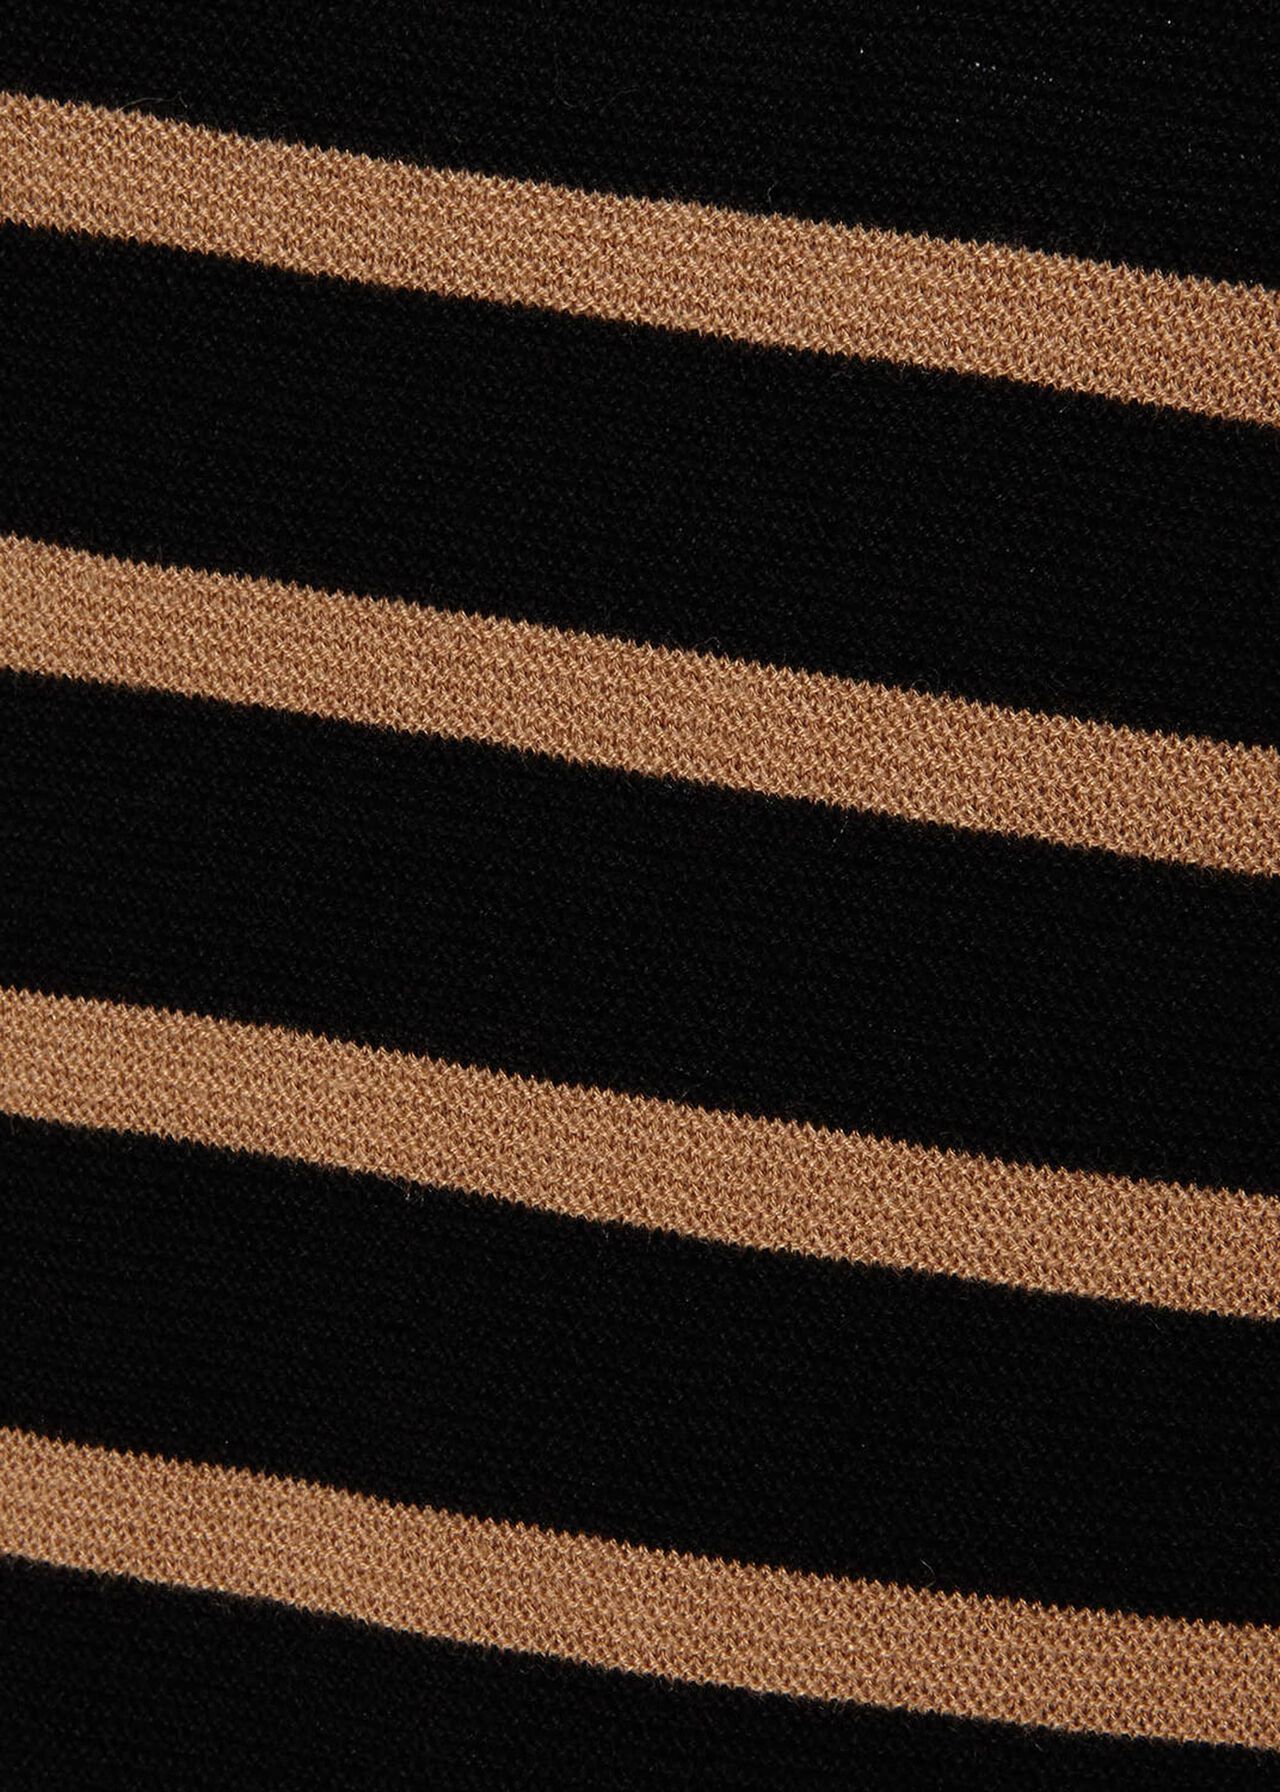 Megg Breton Stripe Knitted Jumper